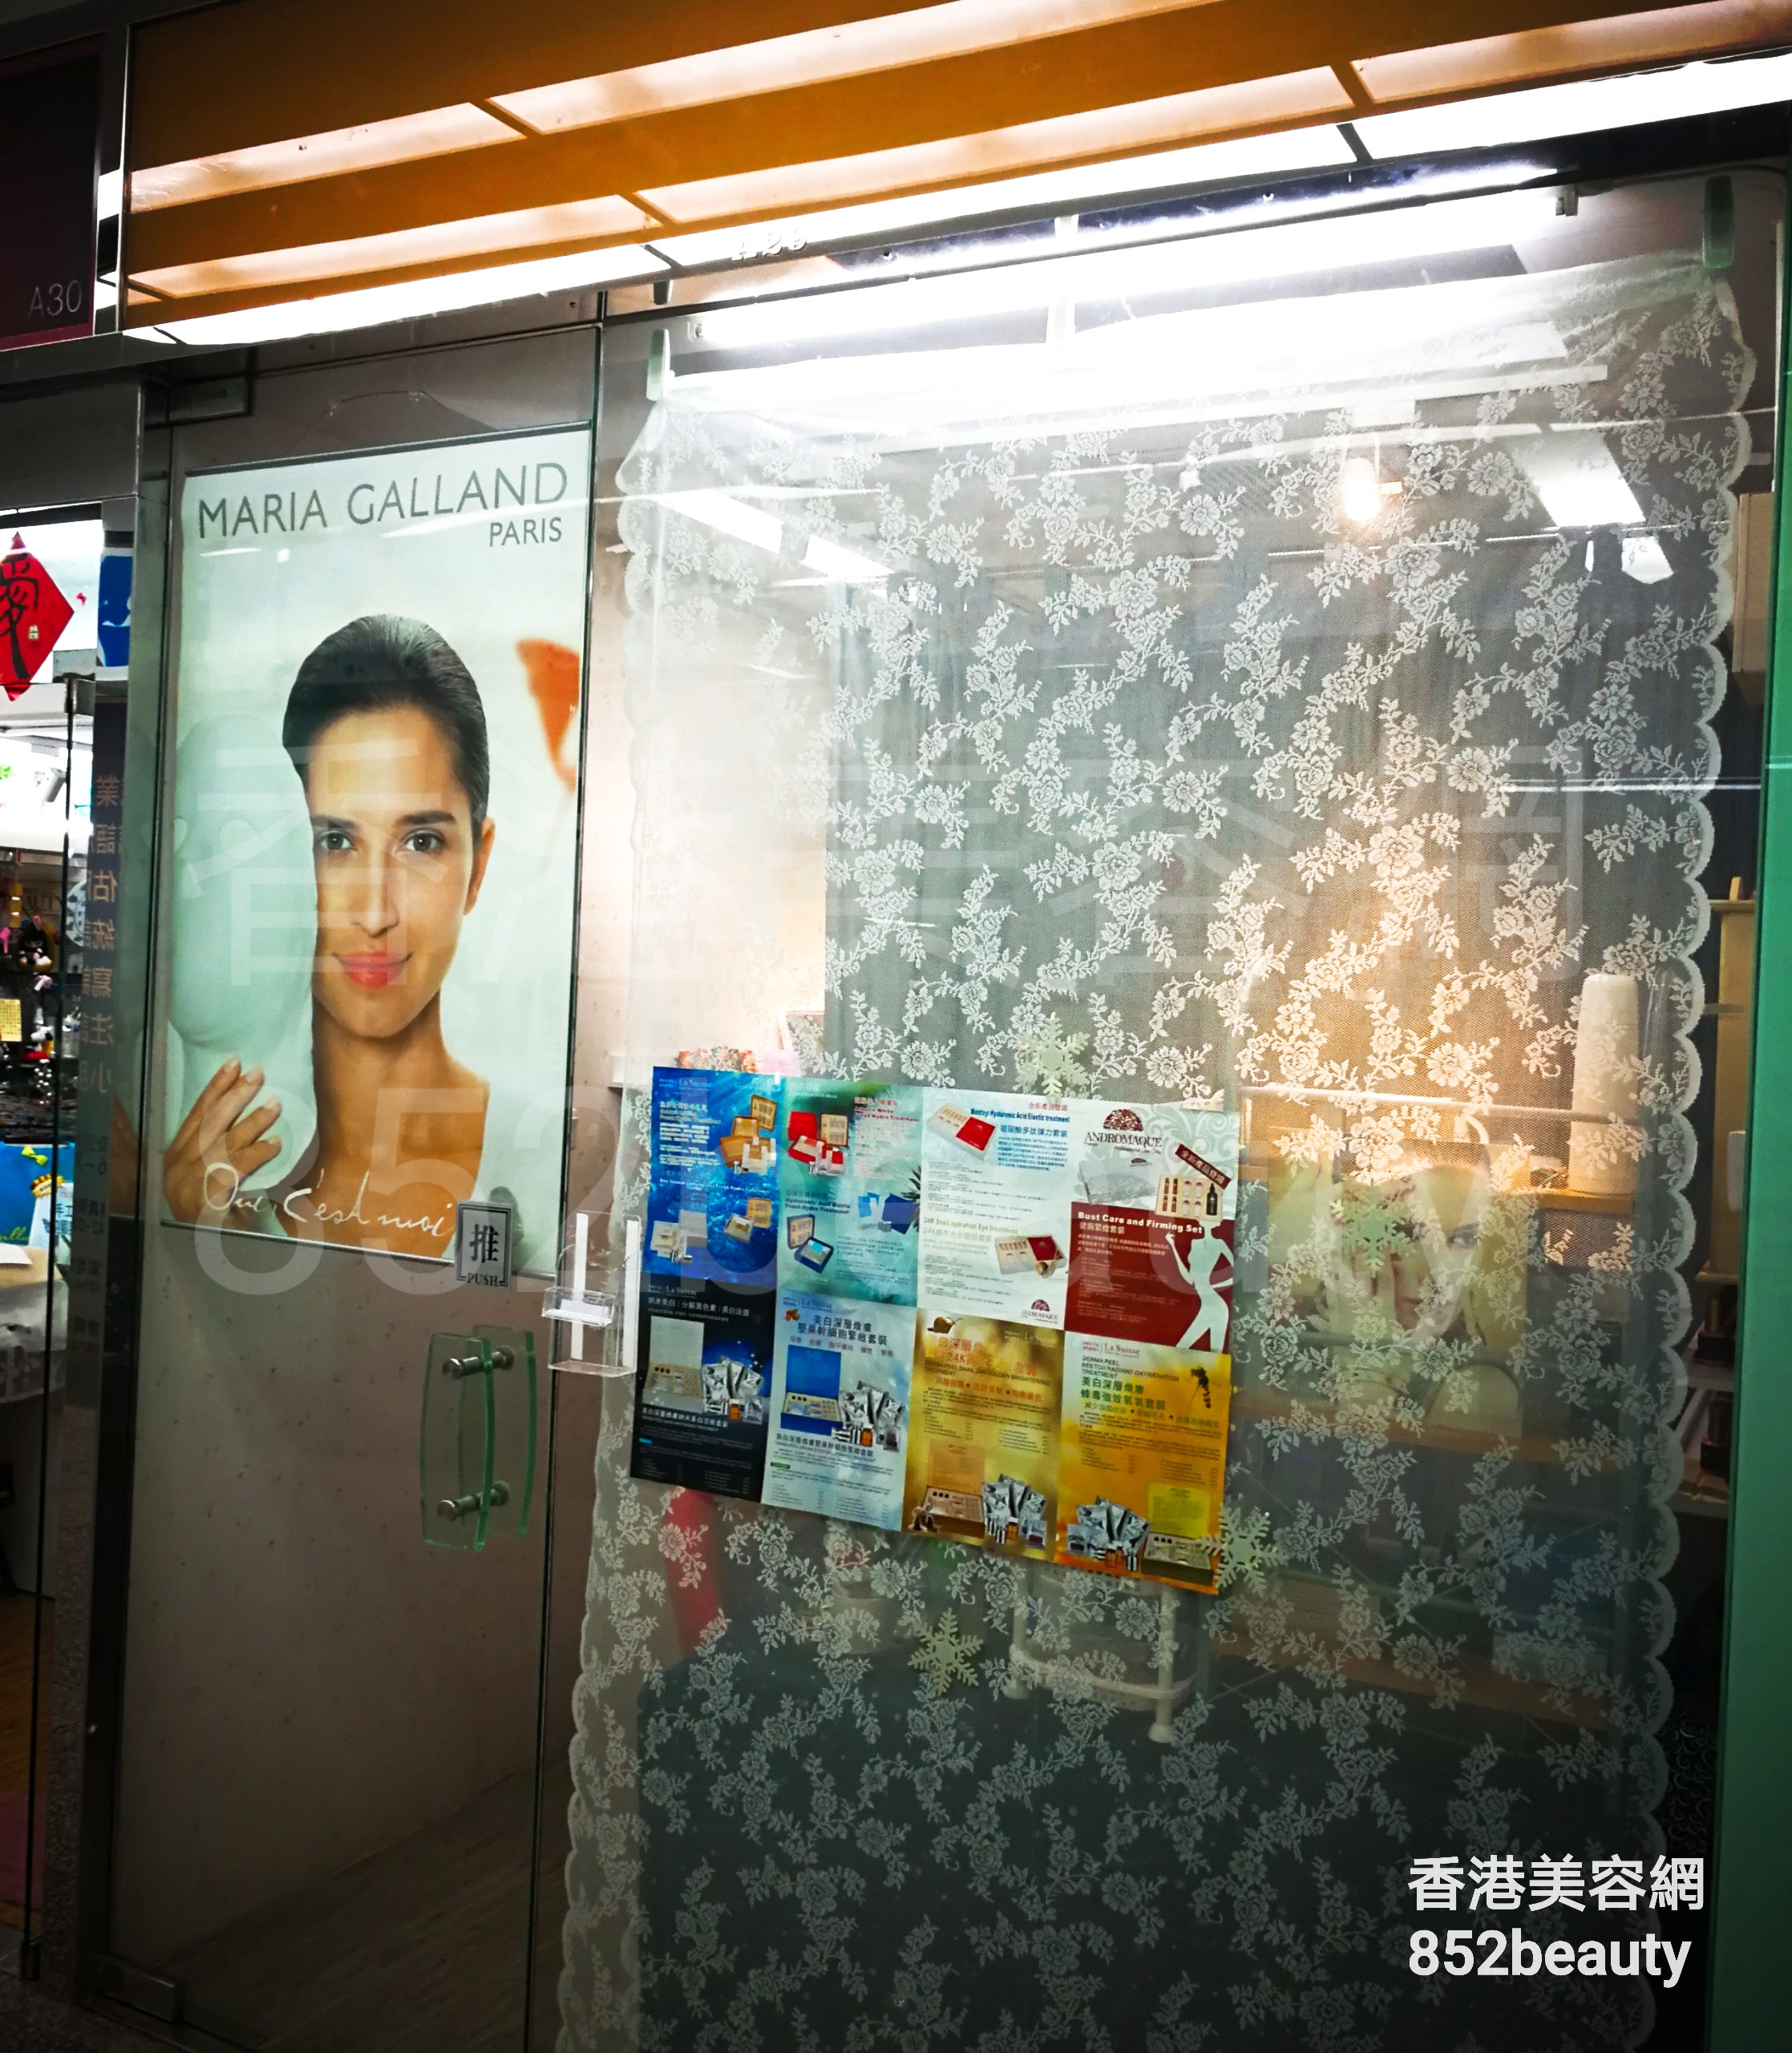 香港美容網 Hong Kong Beauty Salon 美容院 / 美容師: MARIA GALLAND PARIS